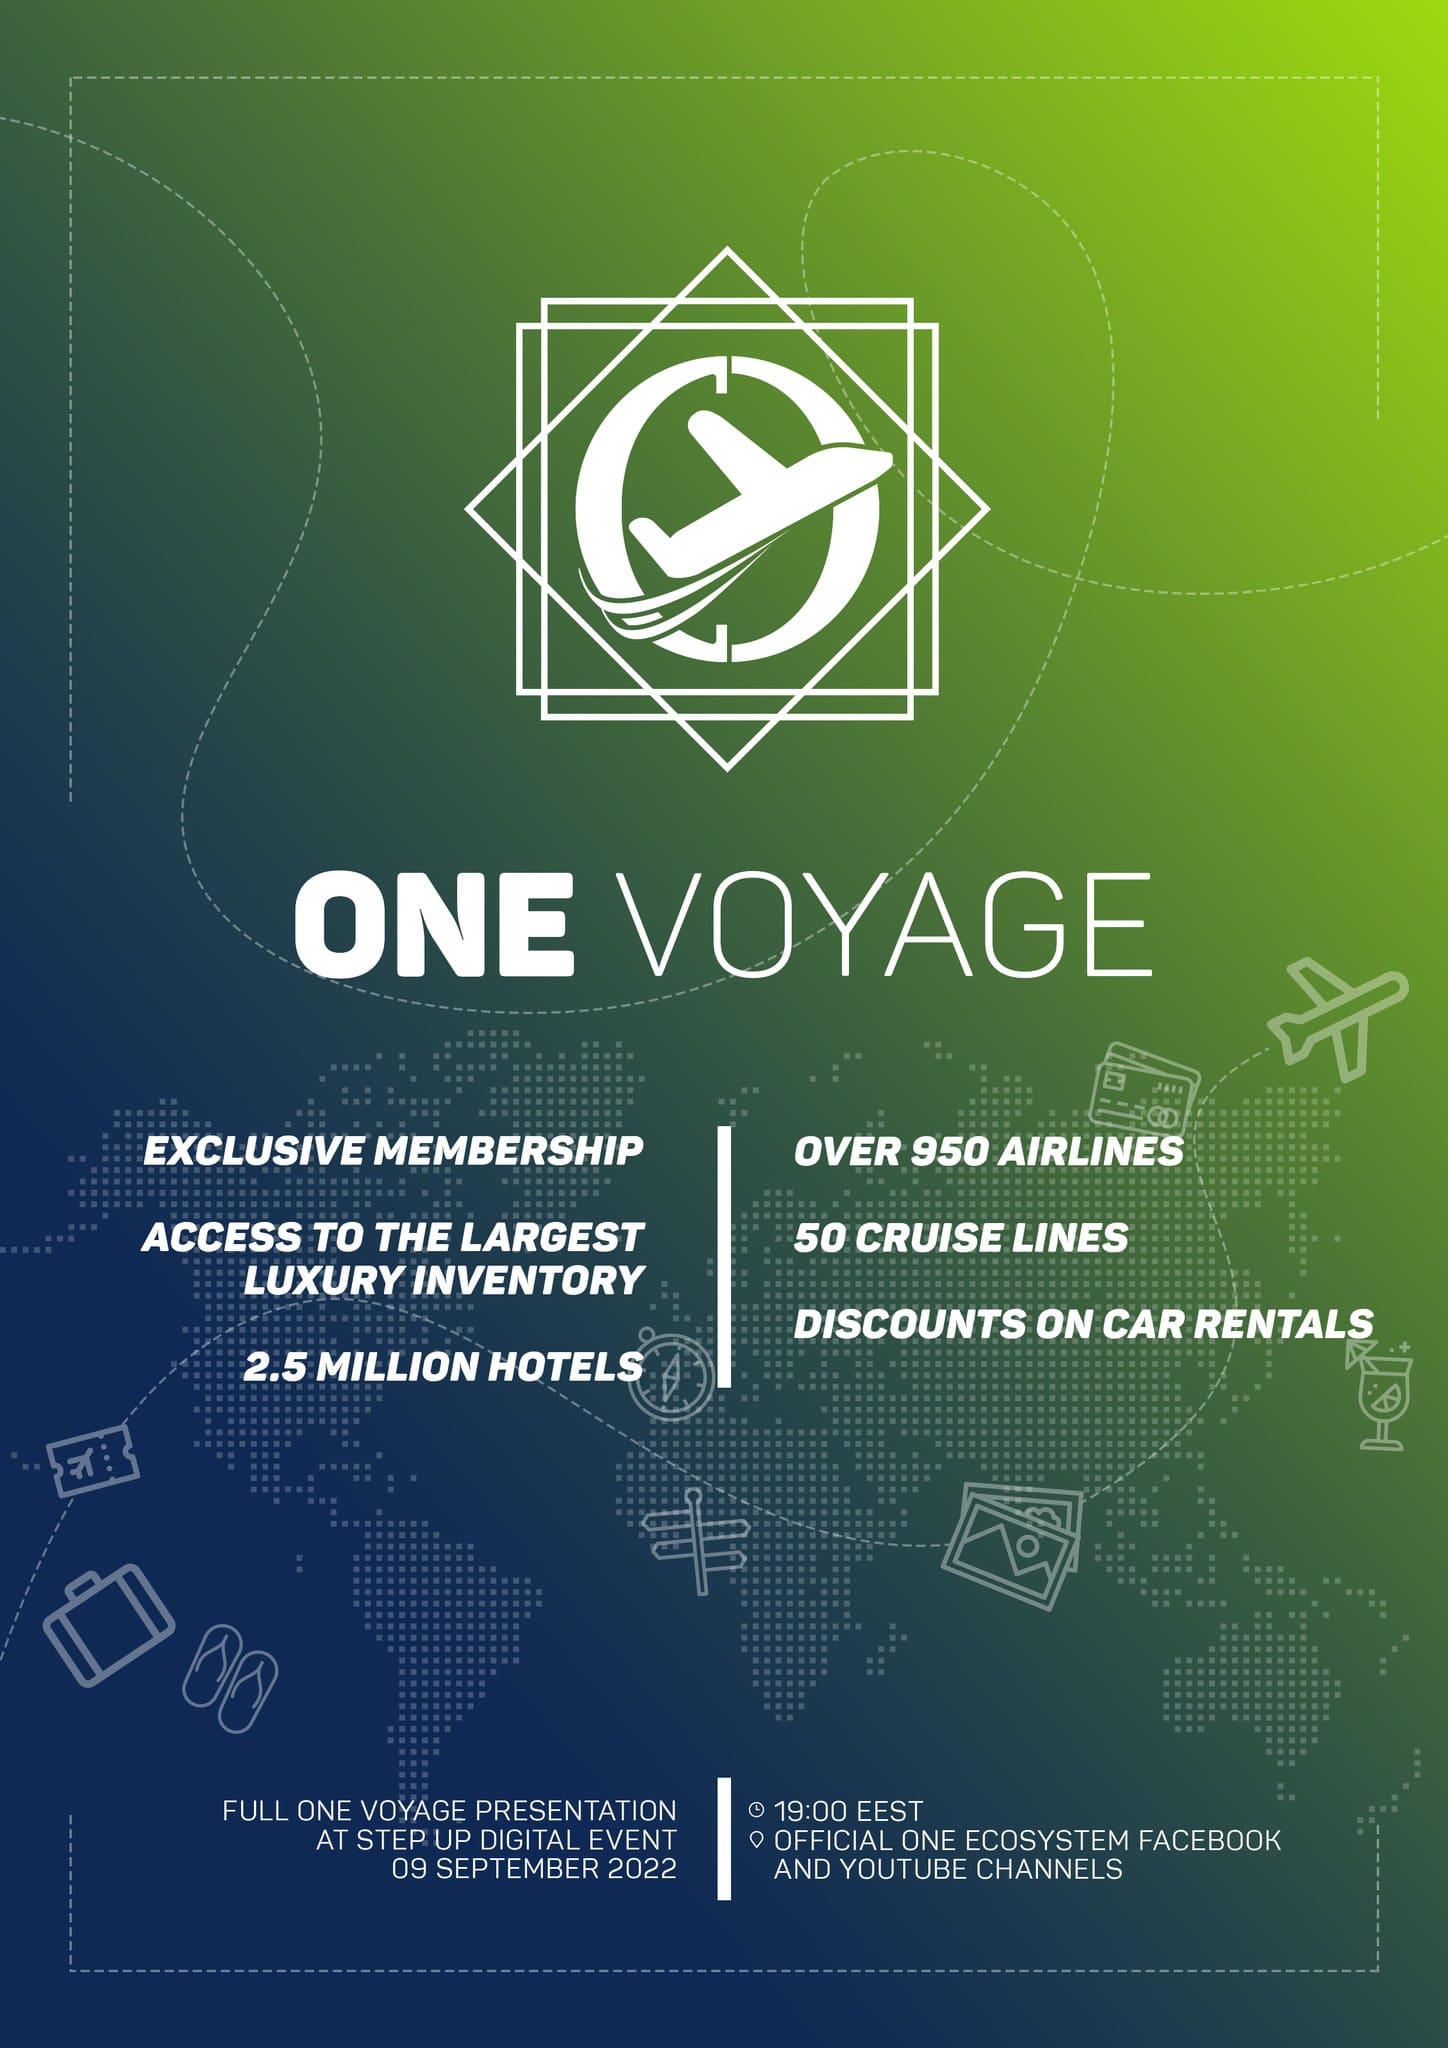 9月9日（EEST）に新サービスが公式発表されます！ONE VOYAGE Travel Clubの全貌をお見逃しなく!